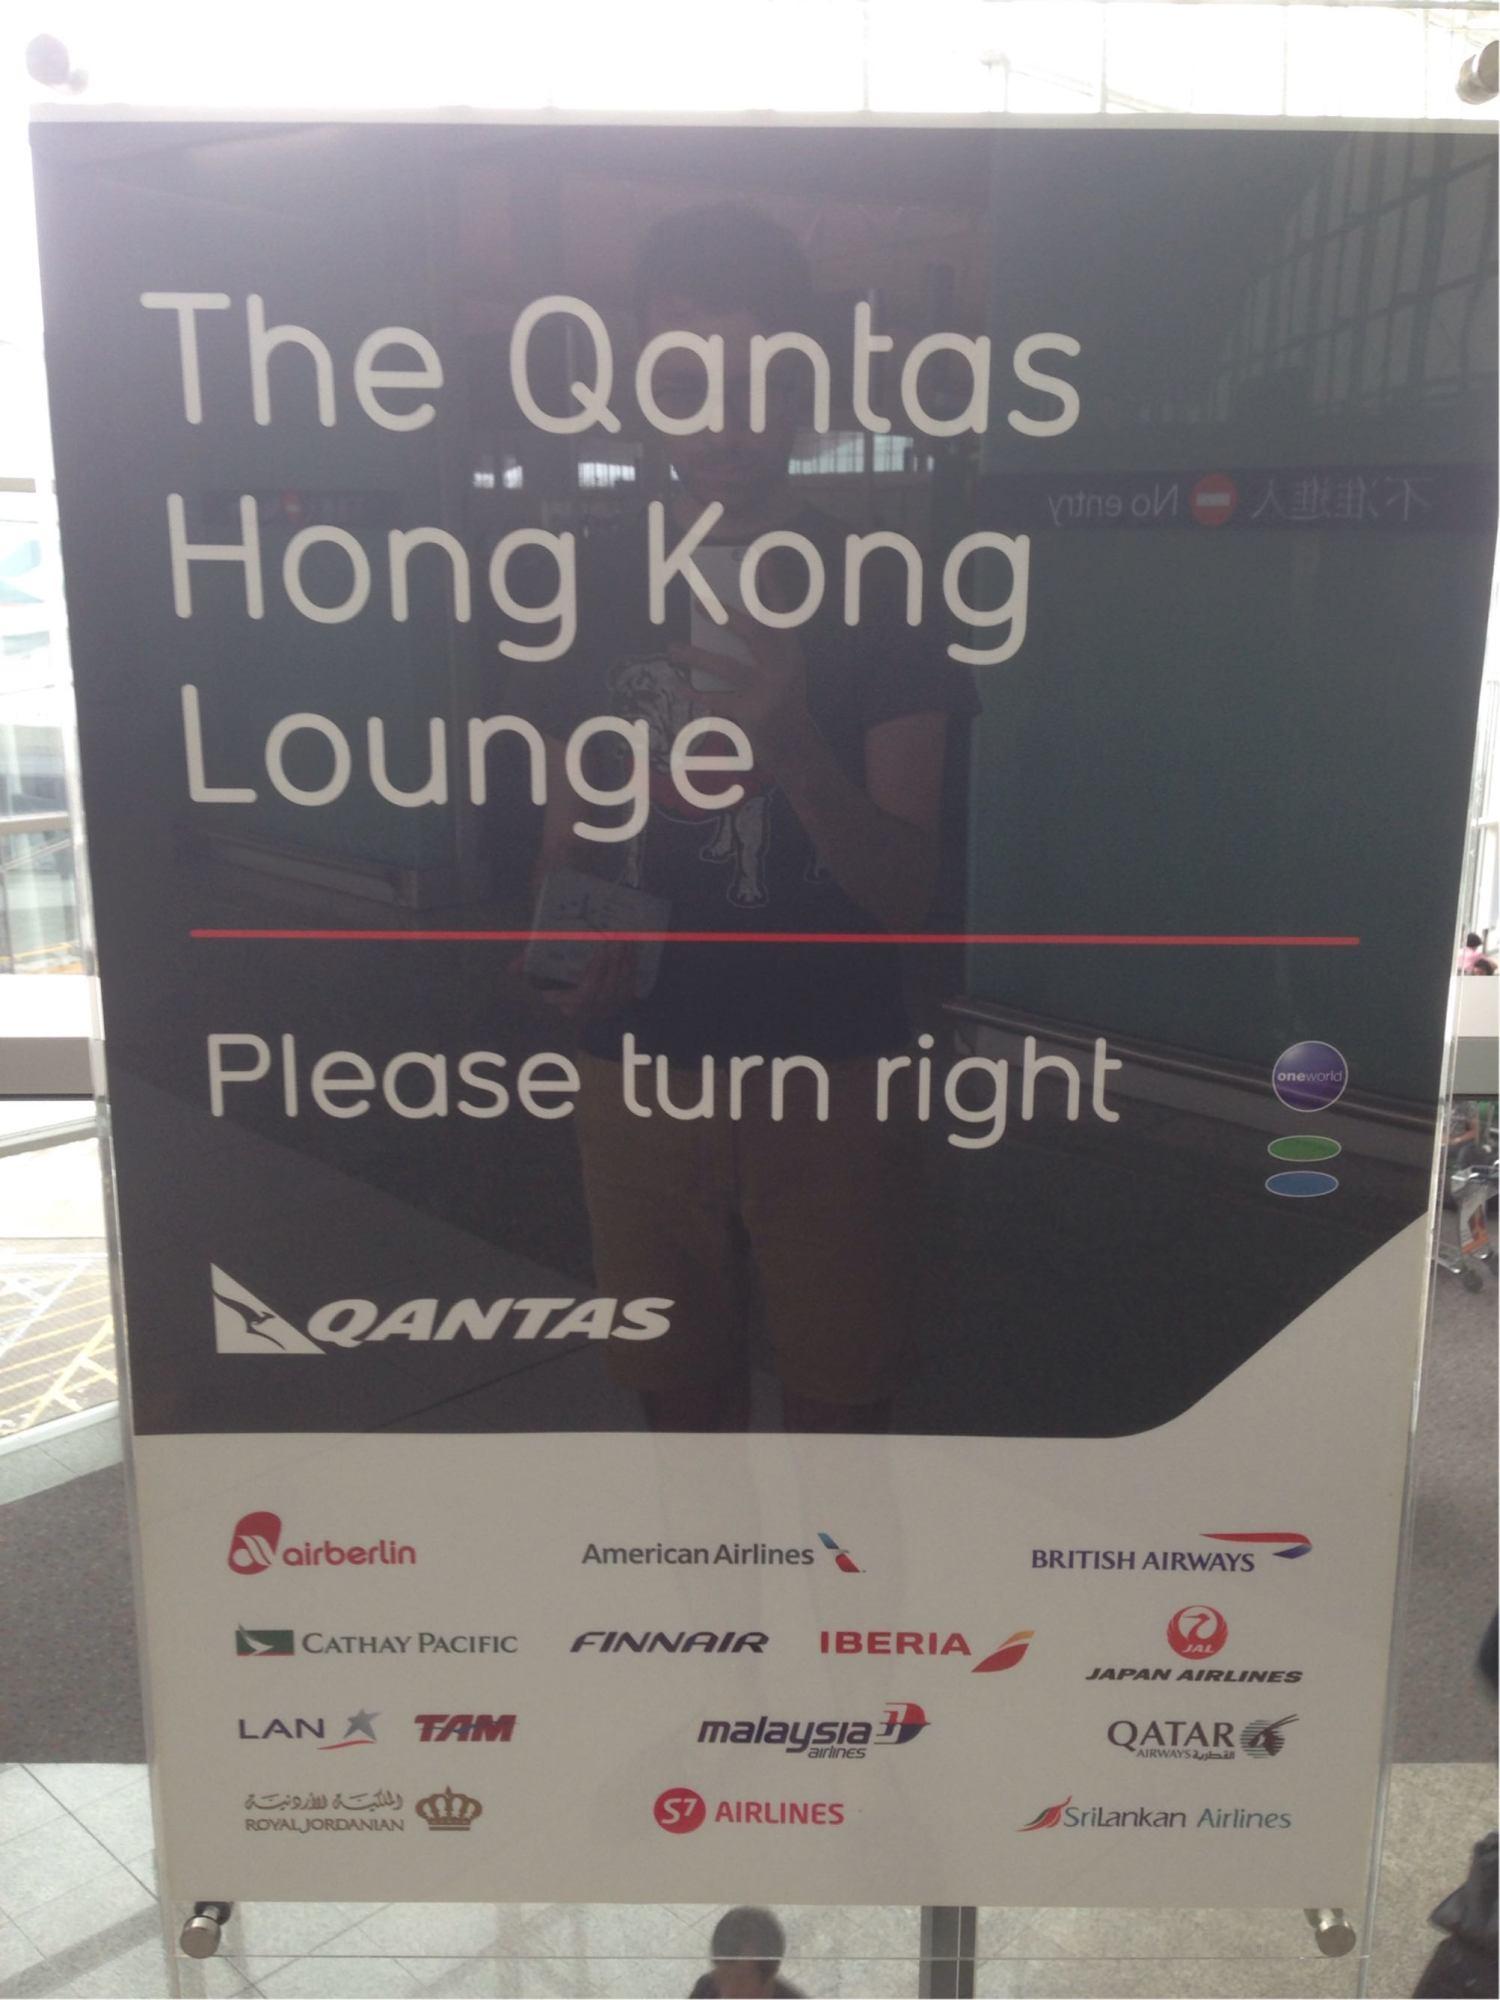 The Qantas Hong Kong Lounge image 53 of 99